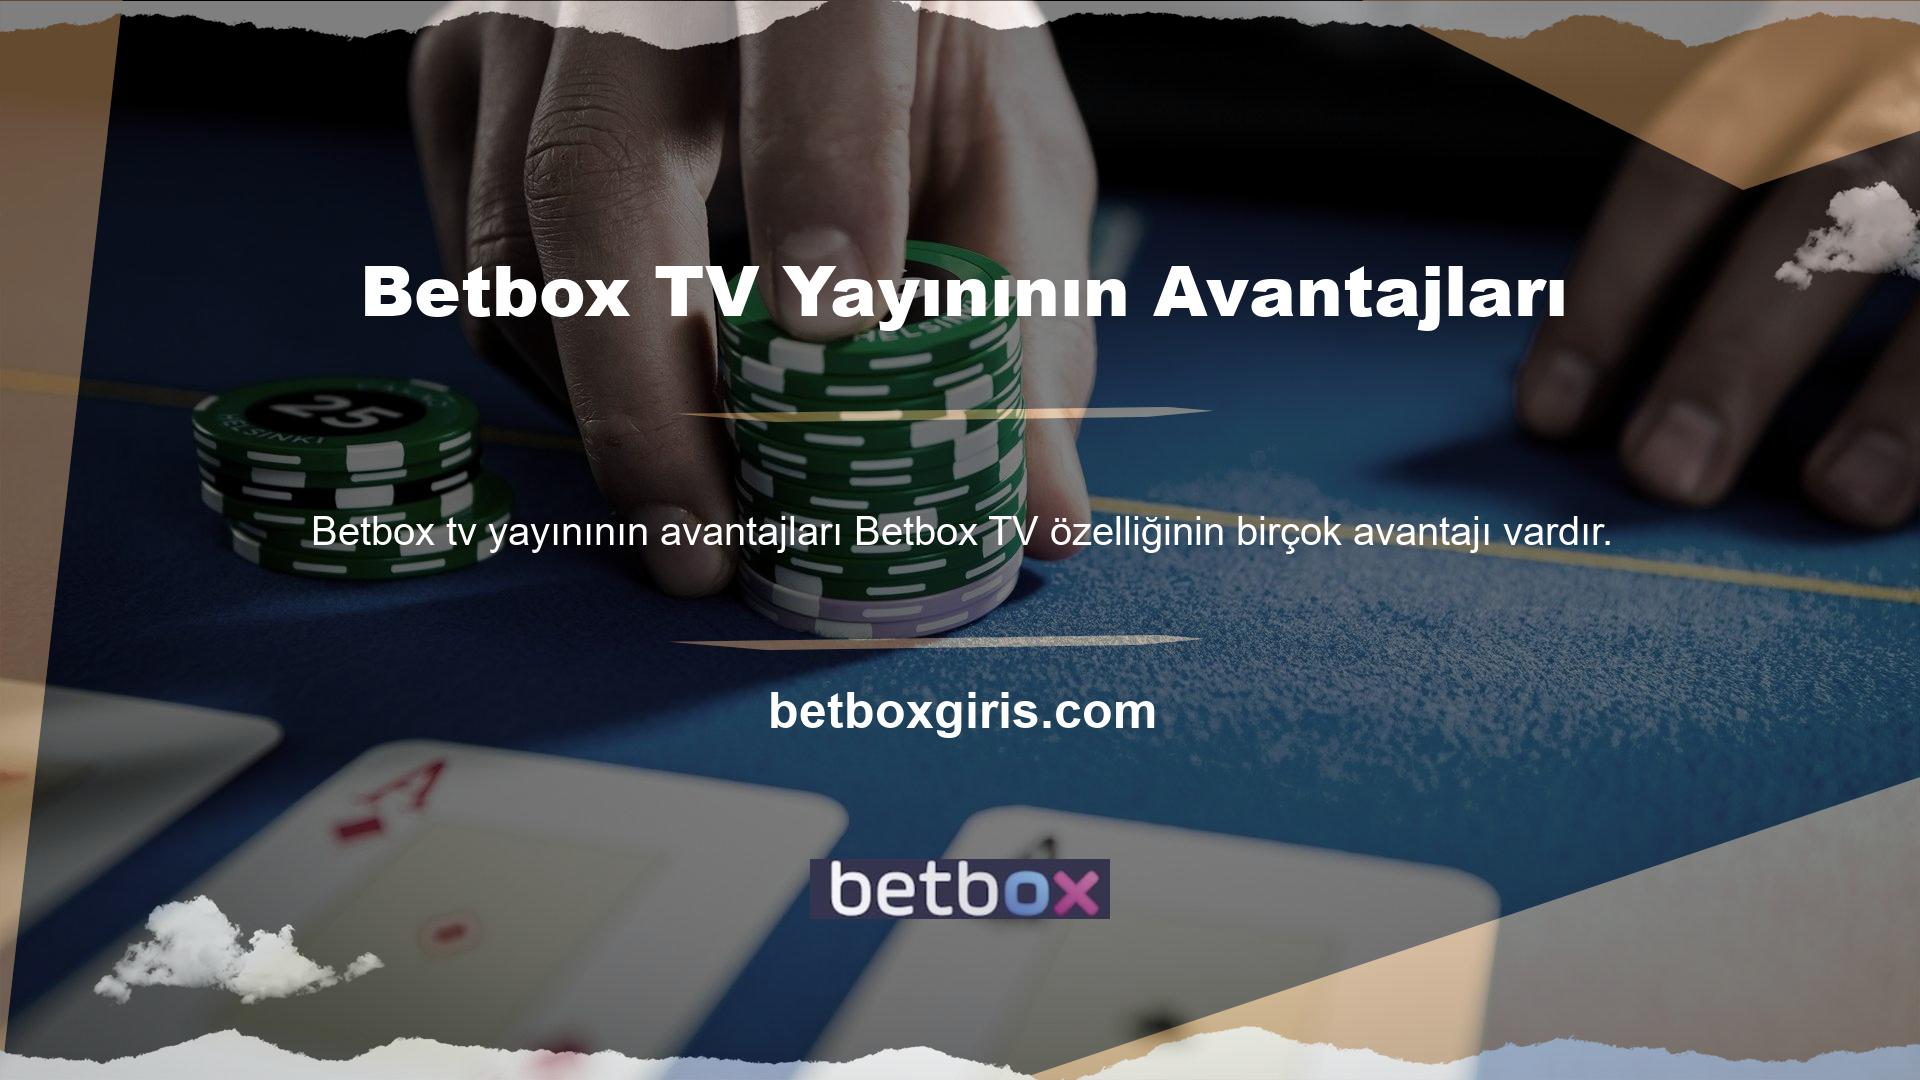 Sitede maçları izlemenin yanı sıra Betbox TV programları da yer almakta ve böylece maçları da izleyebilirsiniz